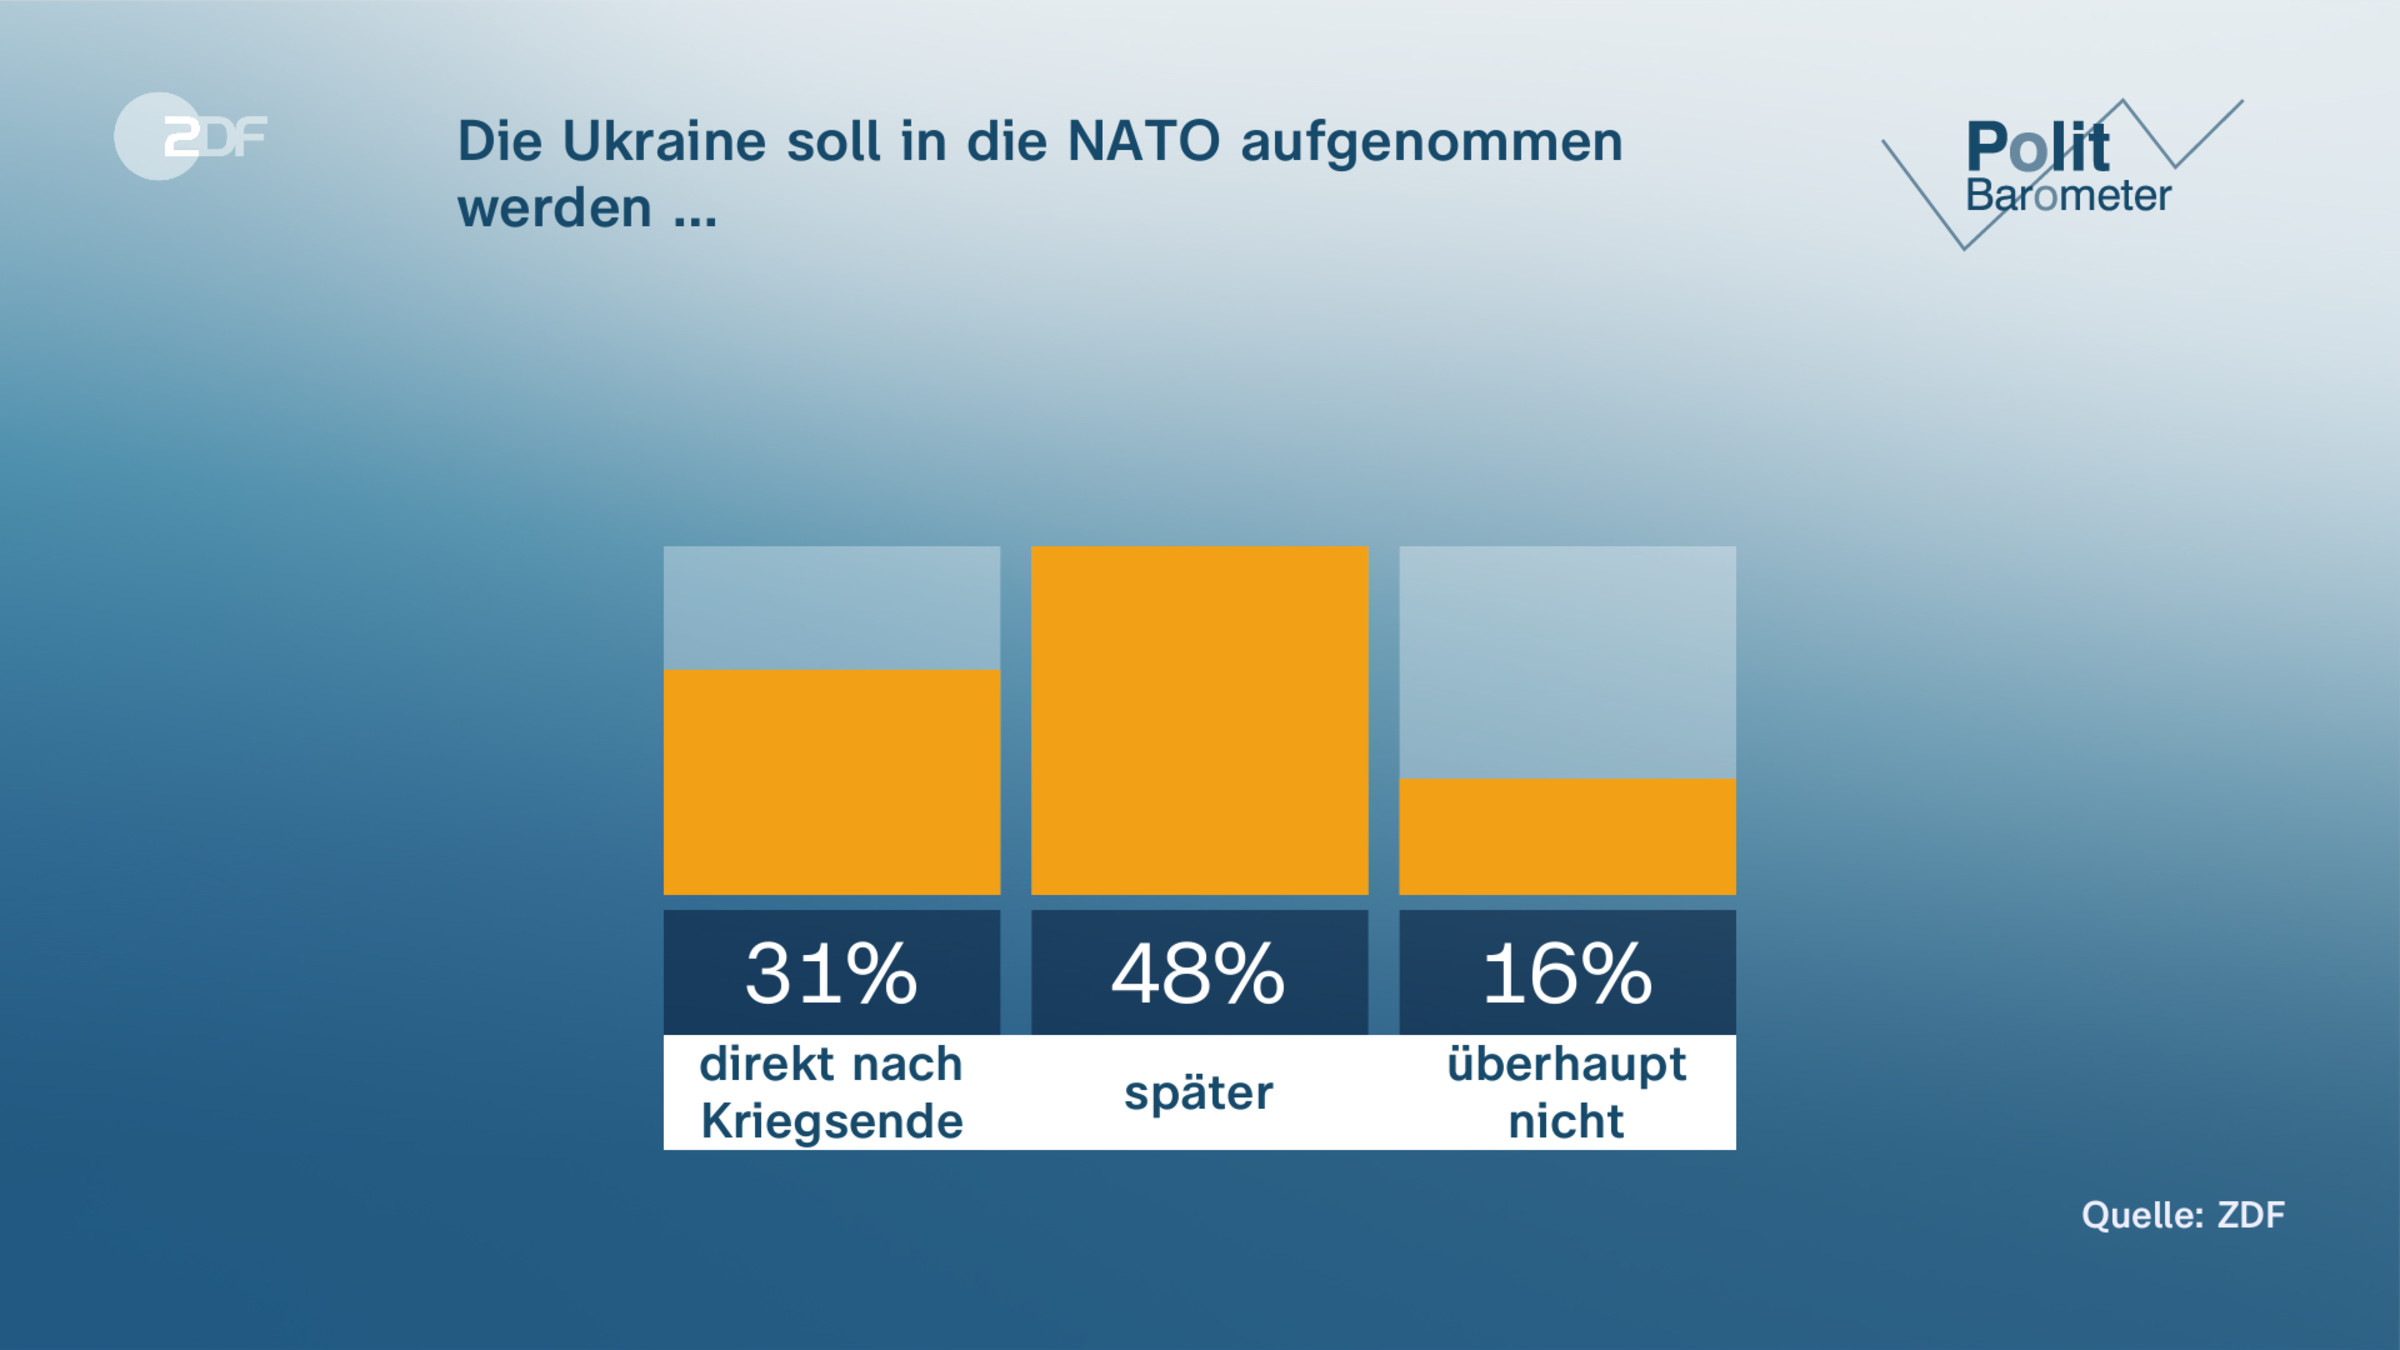 Die Ukraine soll in die NATO aufgenommen werden …